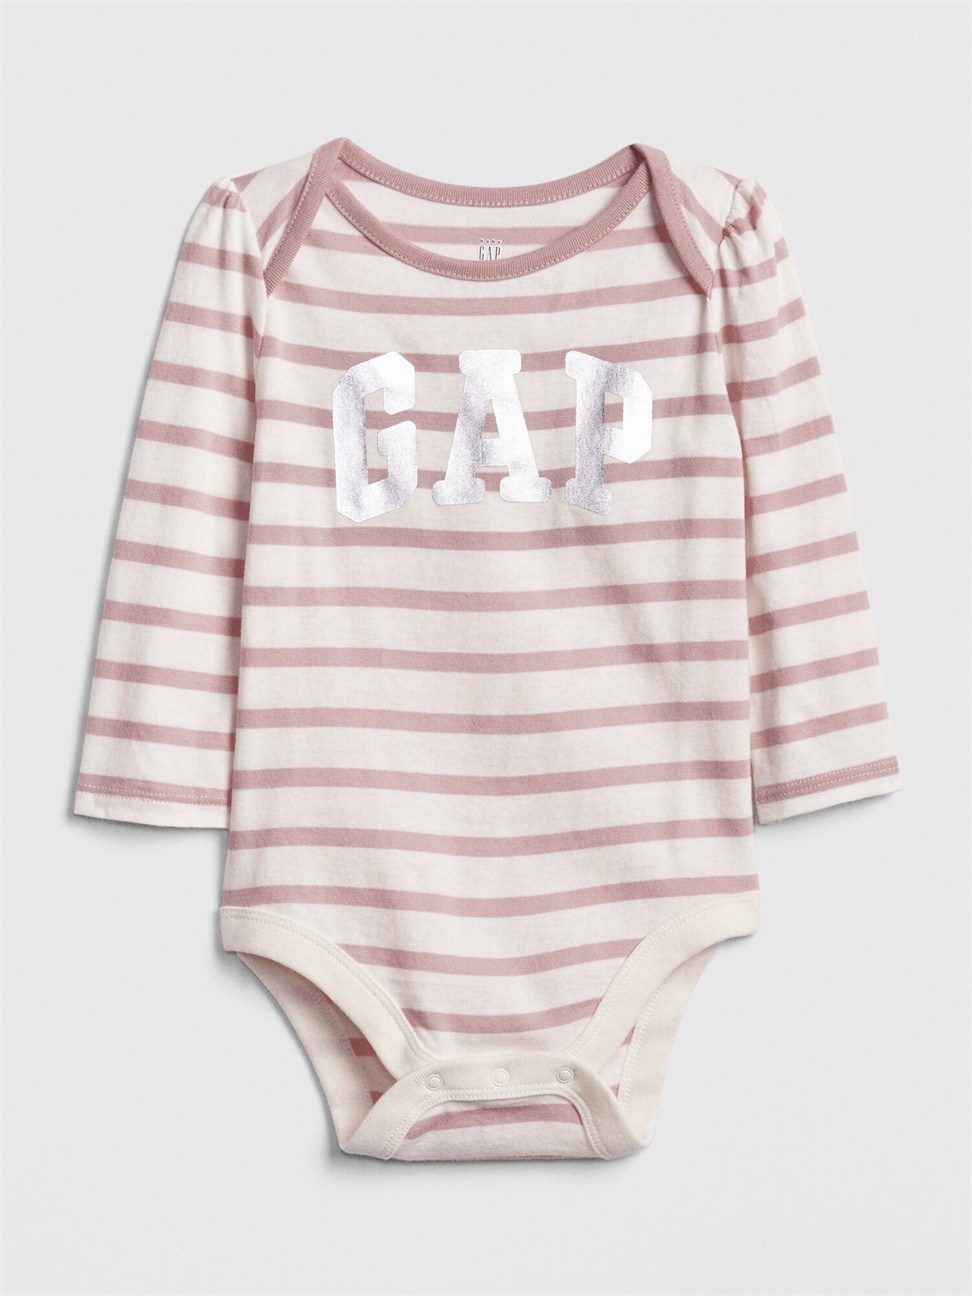 嬰兒裝|Logo柔軟長袖包屁衣-粉色條紋